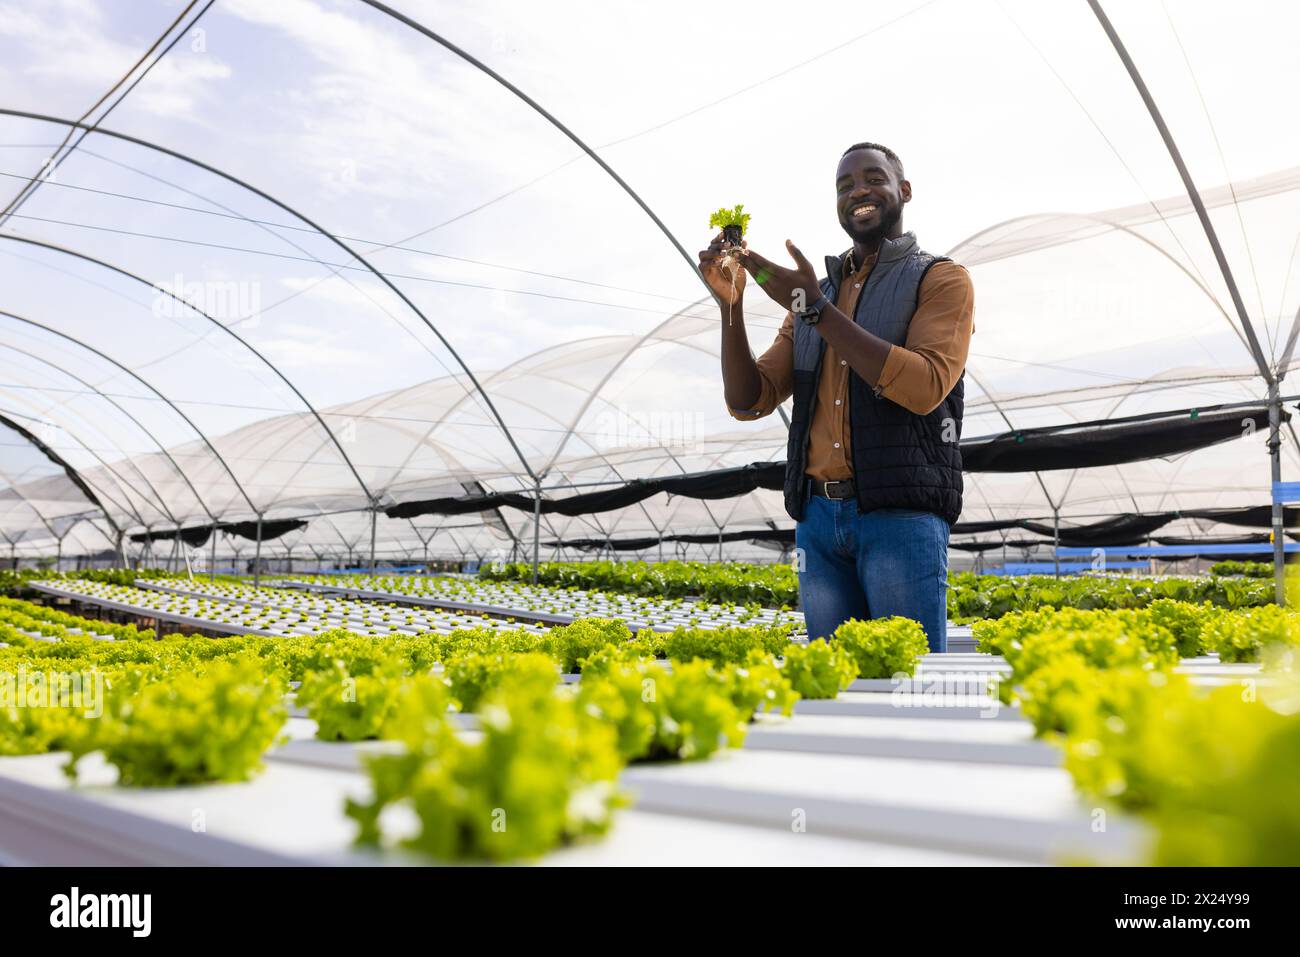 Jeune agriculteur afro-américain tenant de la laitue, debout en serre dans une ferme hydroponique Banque D'Images